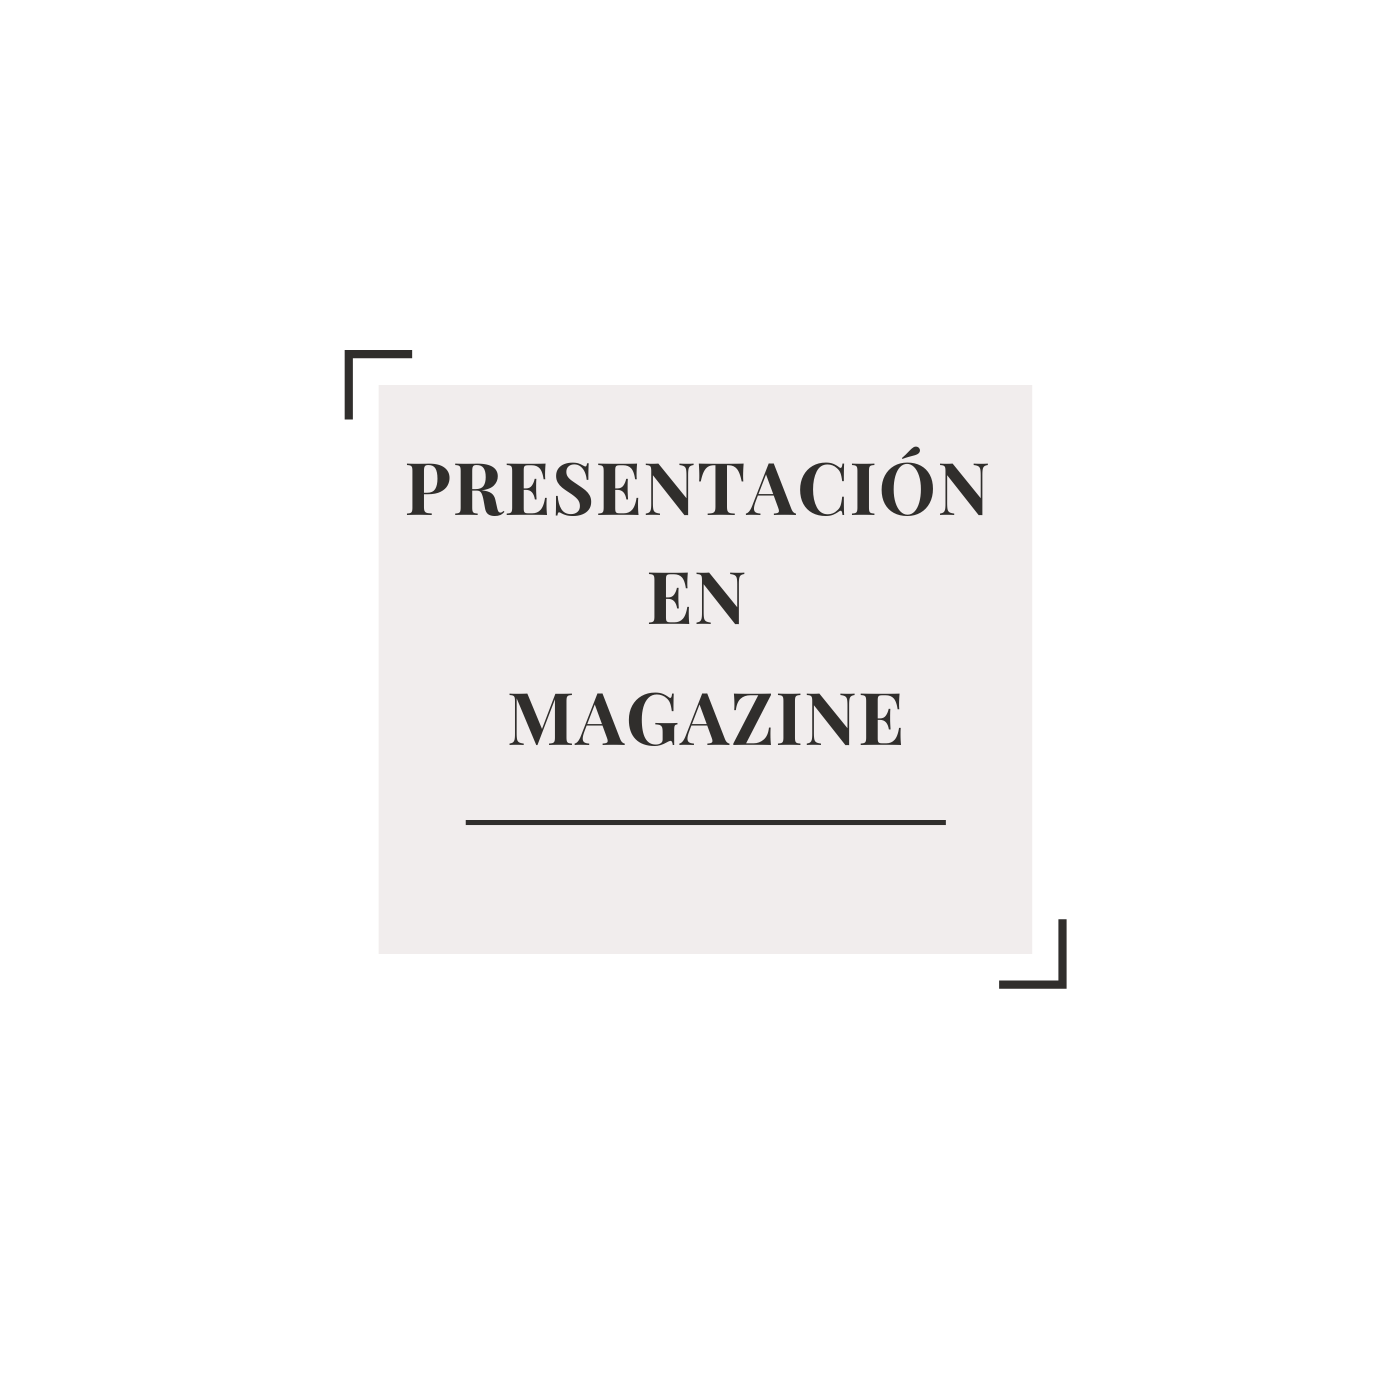 COVid finanzas magazine; prensa sociedad